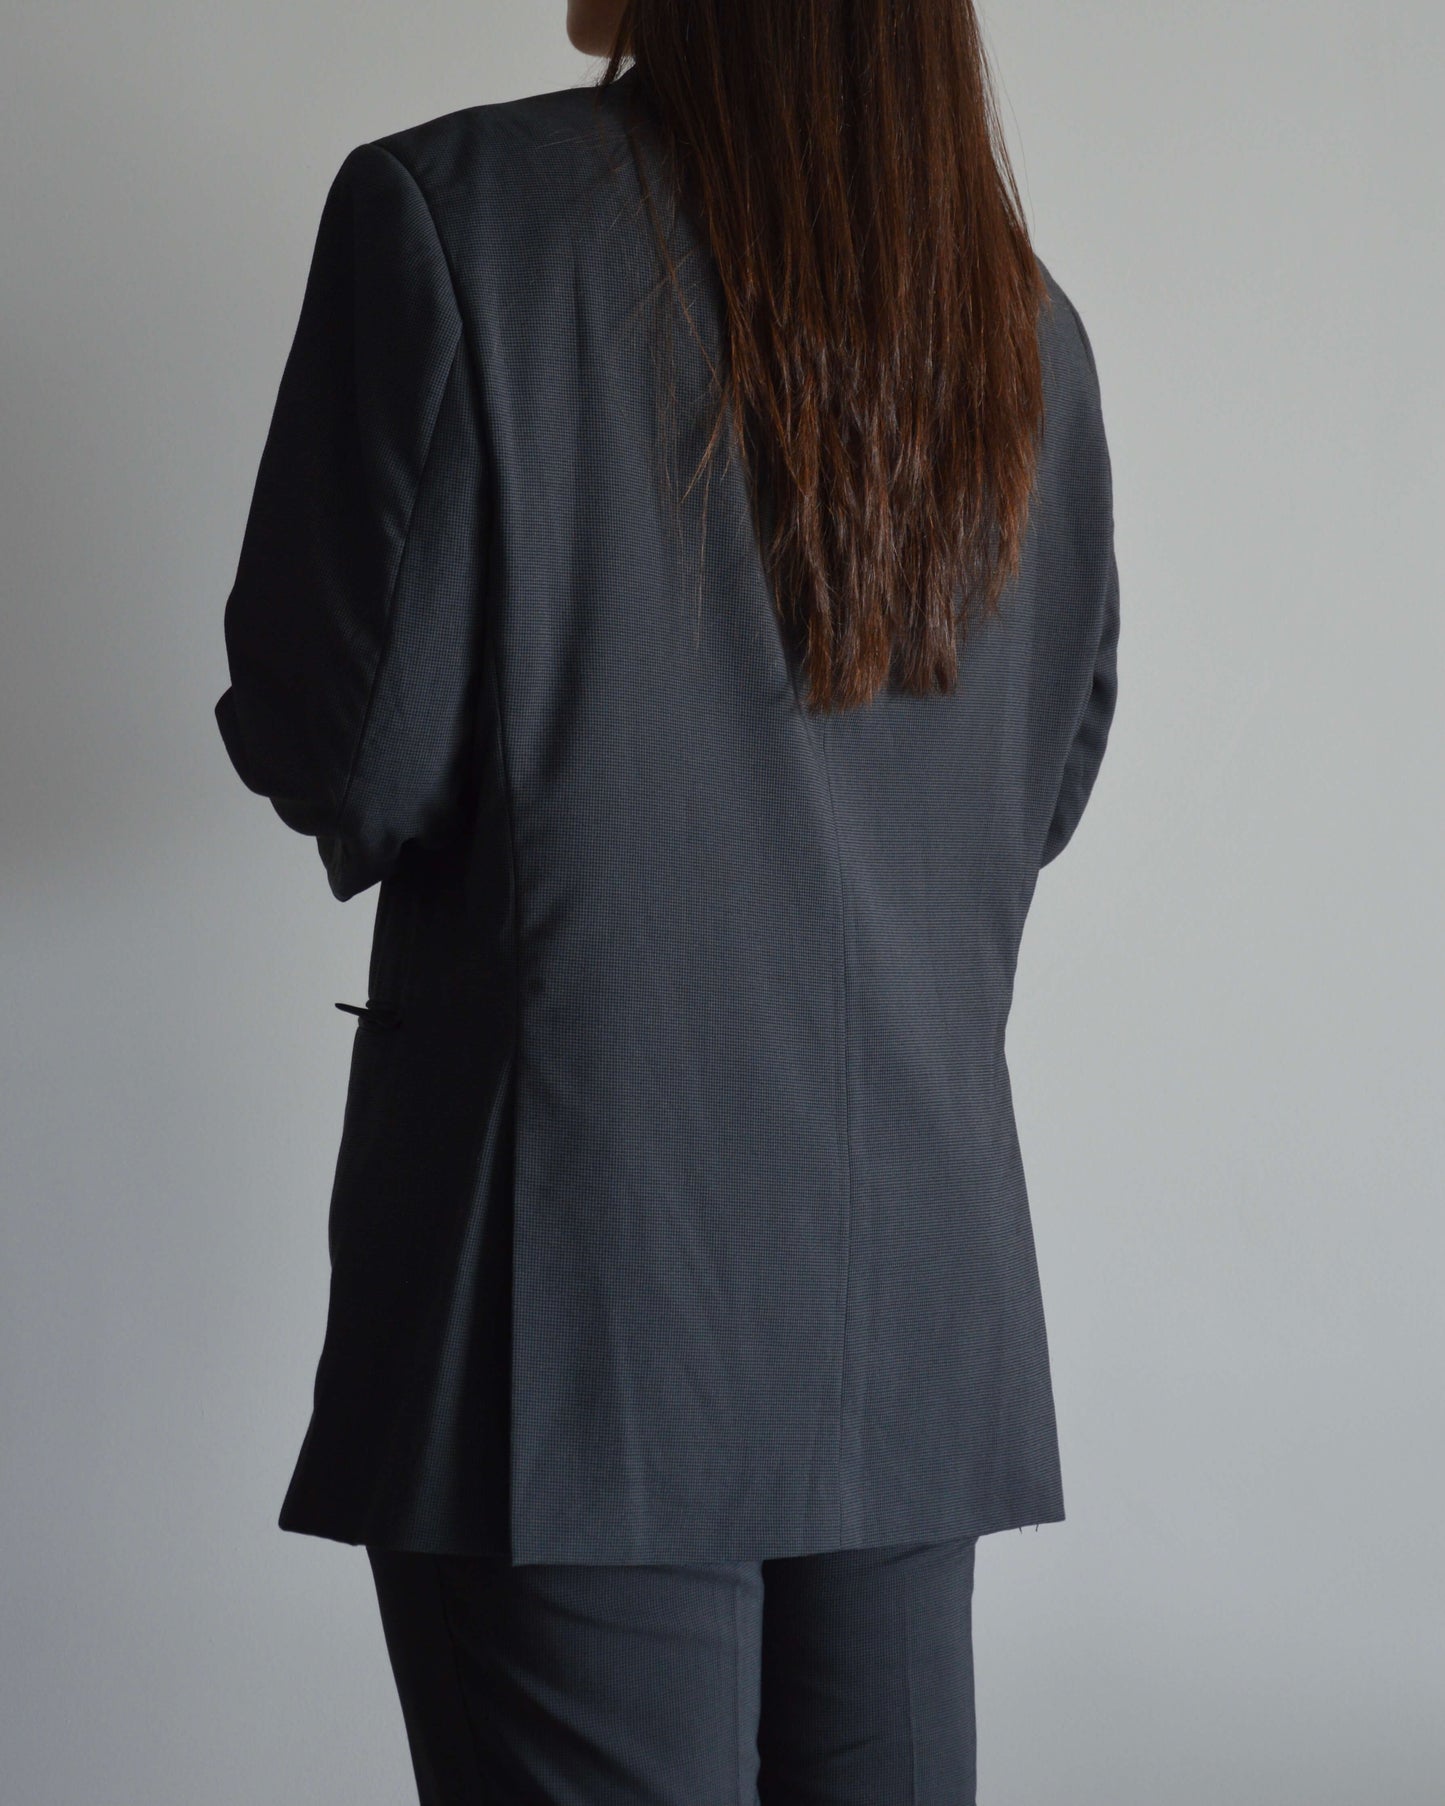 Suit - Black & Grey (XS/M)